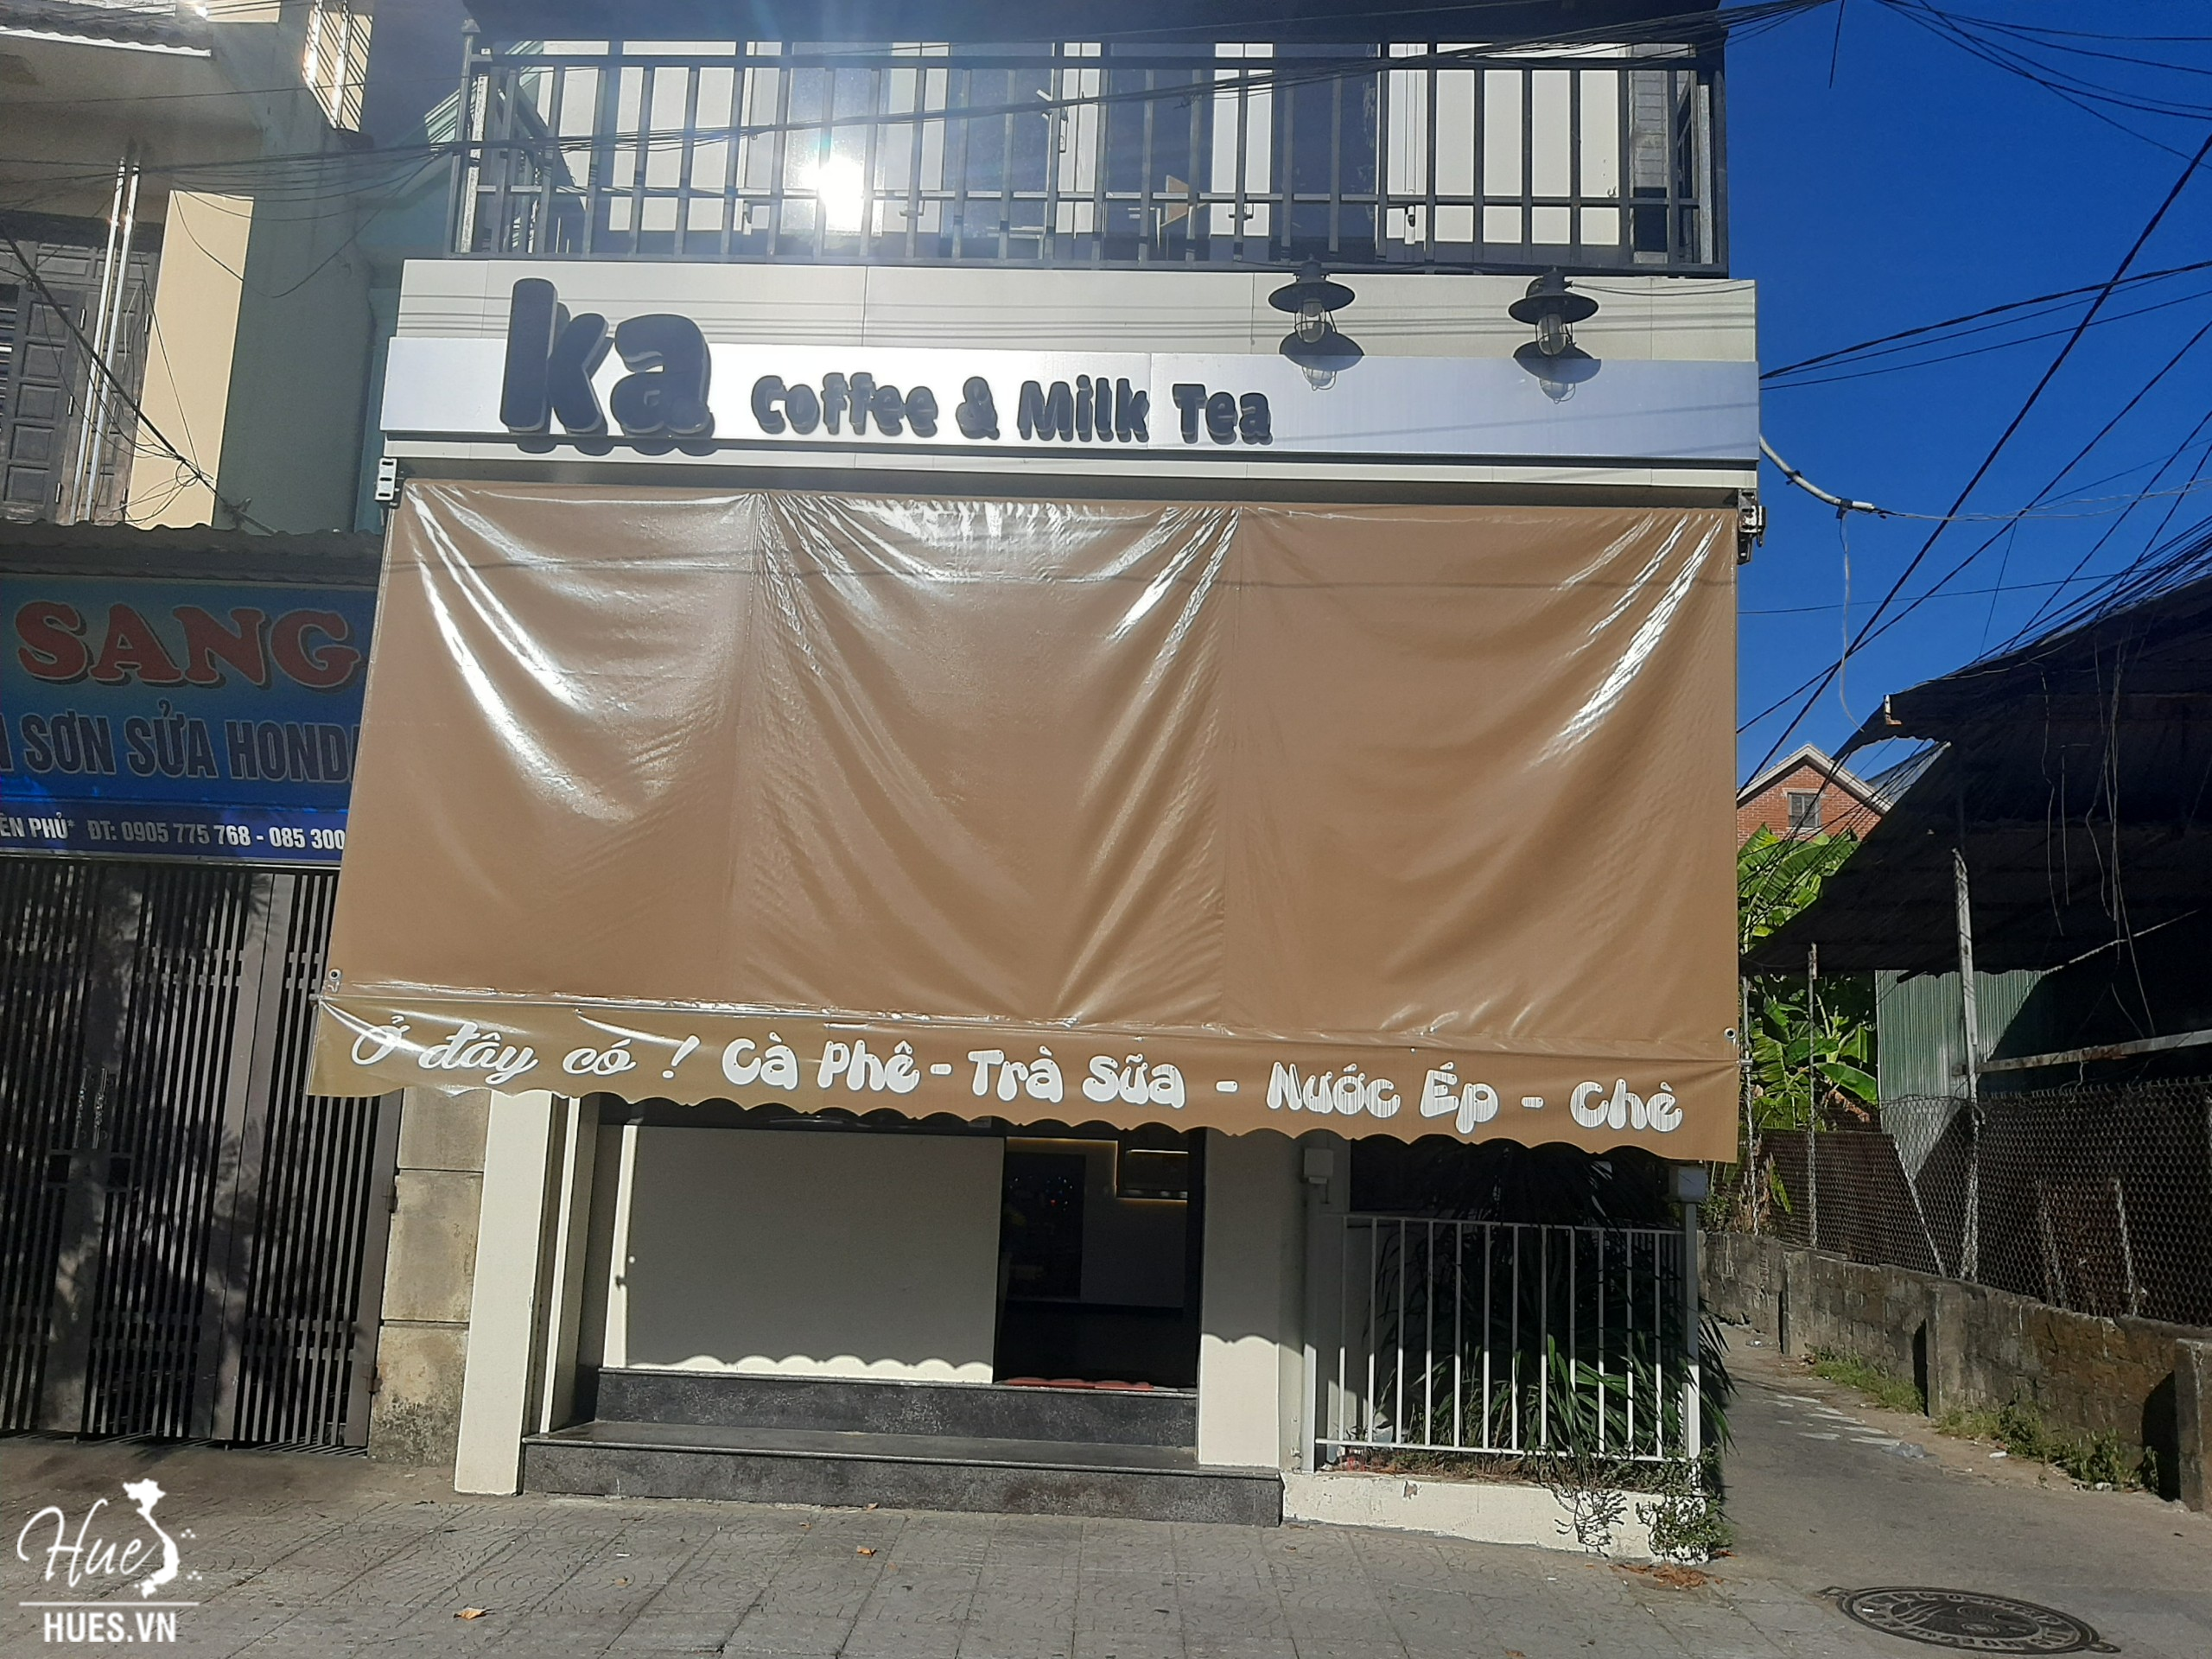 Ka coffee & milktea